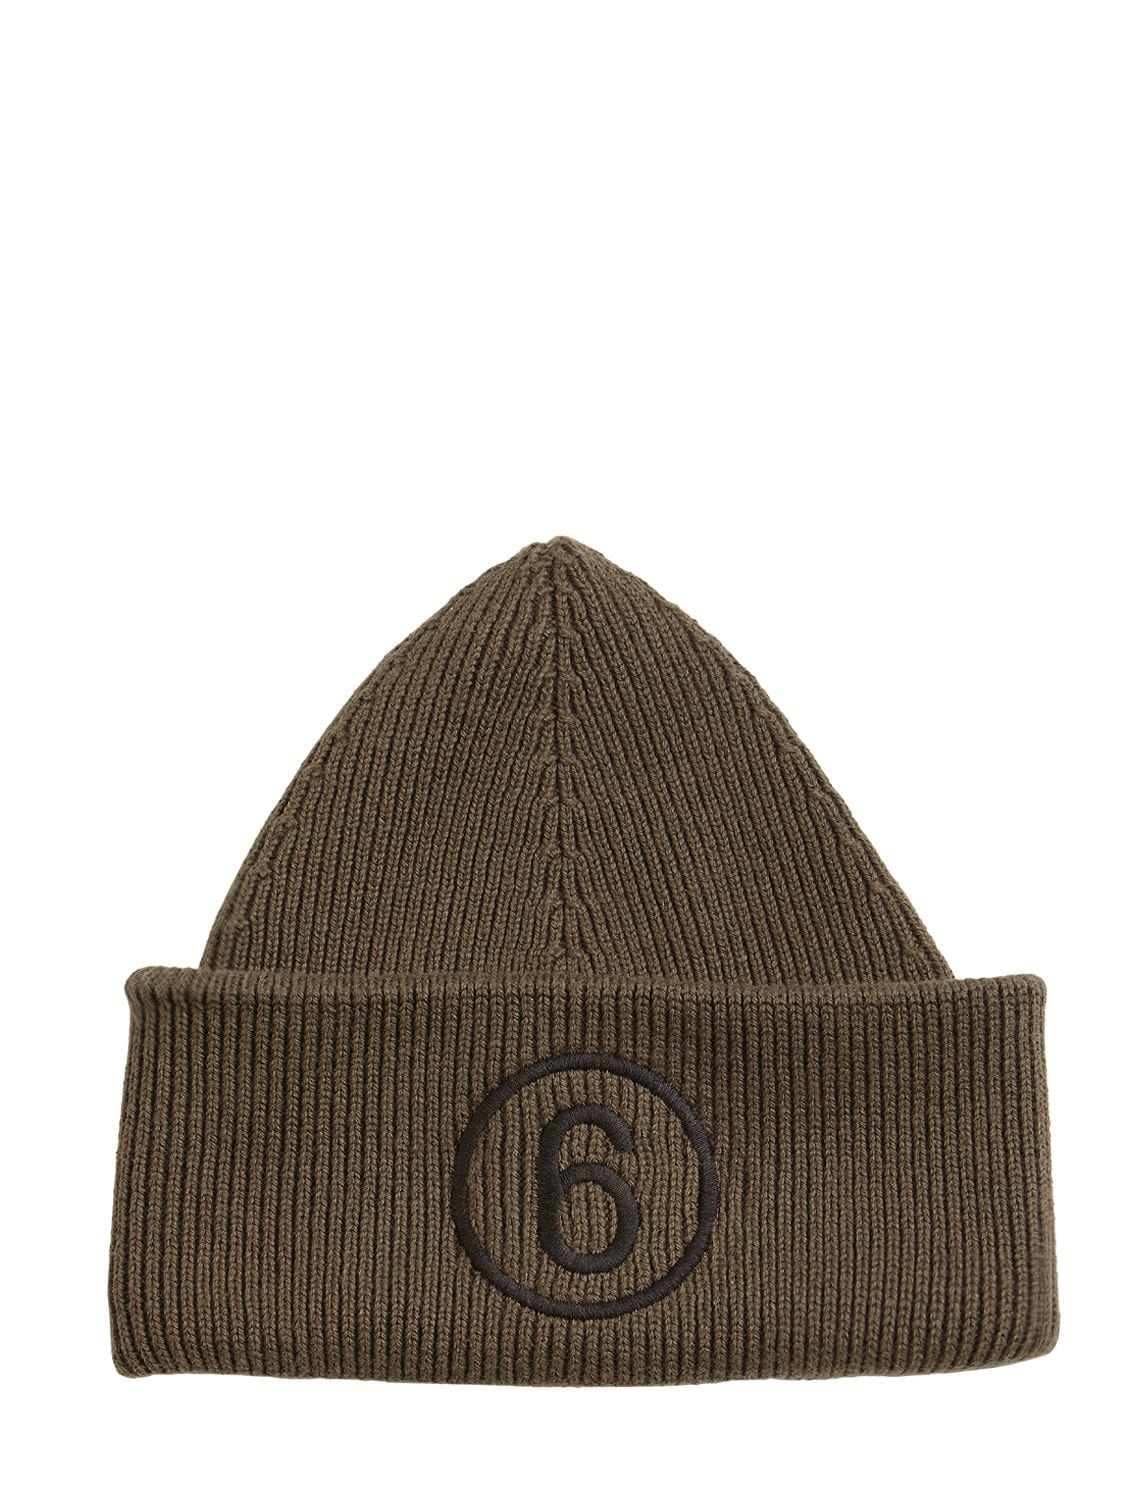 MM6 MAISON MARGIELA LOGO棉&羊毛针织便帽,74I0UX001-NZI40